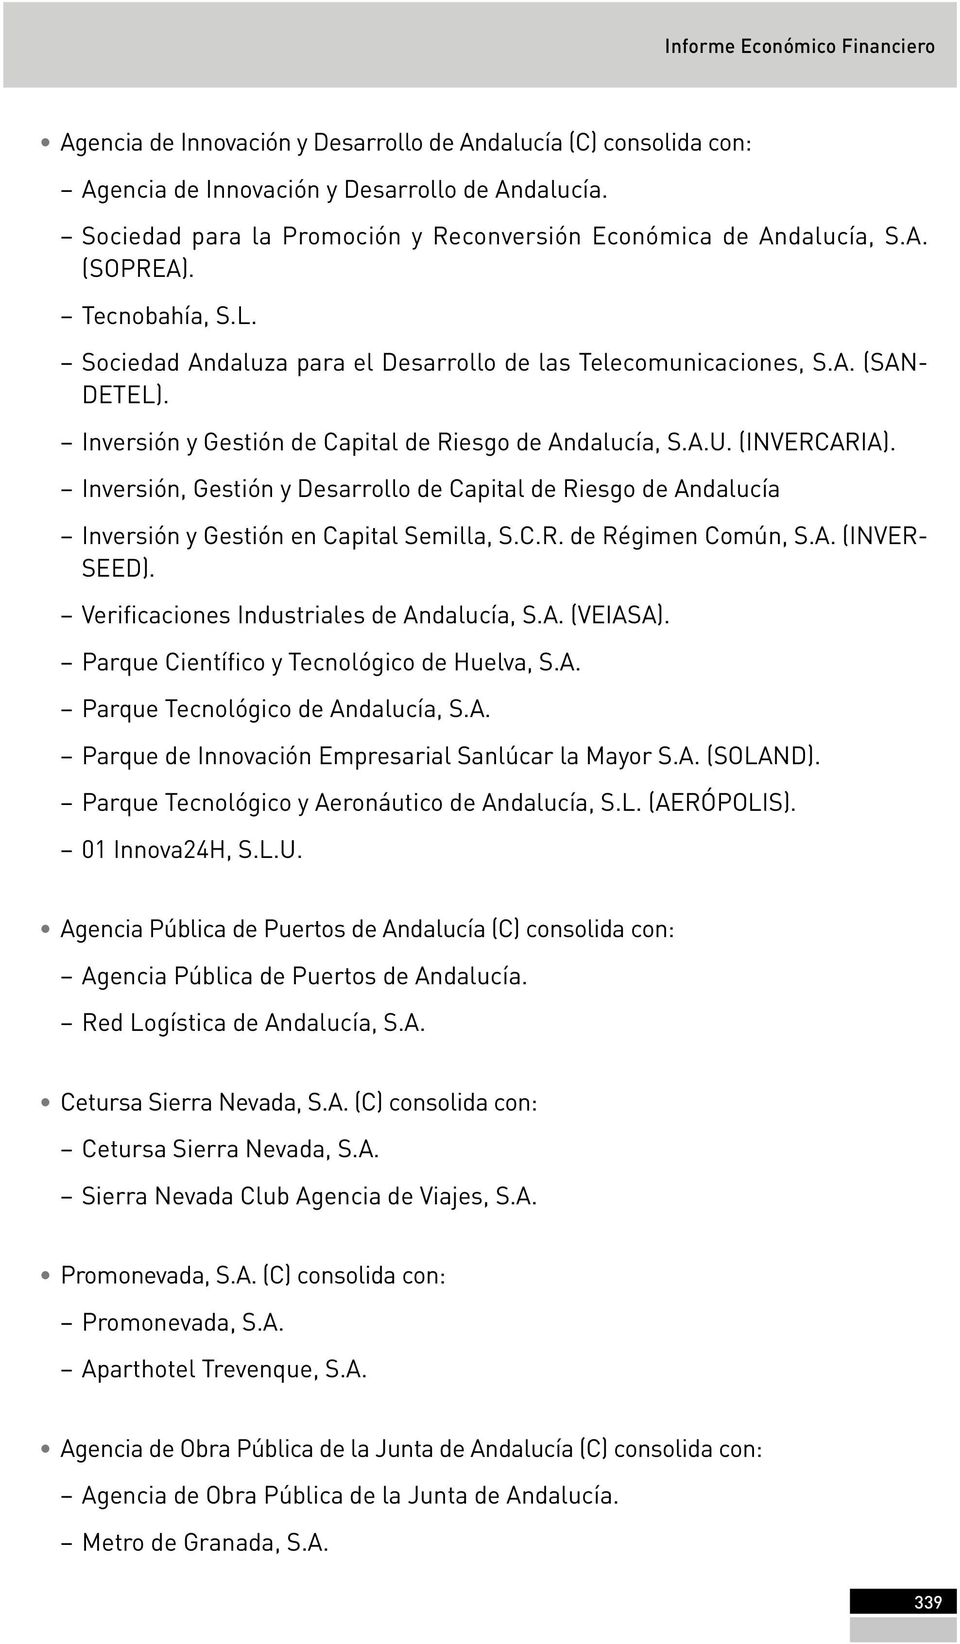 Inversión y Gestión de Capital de Riesgo de Andalucía, S.A.U. (INVERCARIA). Inversión, Gestión y Desarrollo de Capital de Riesgo de Andalucía Inversión y Gestión en Capital Semilla, S.C.R. de Régimen Común, S.